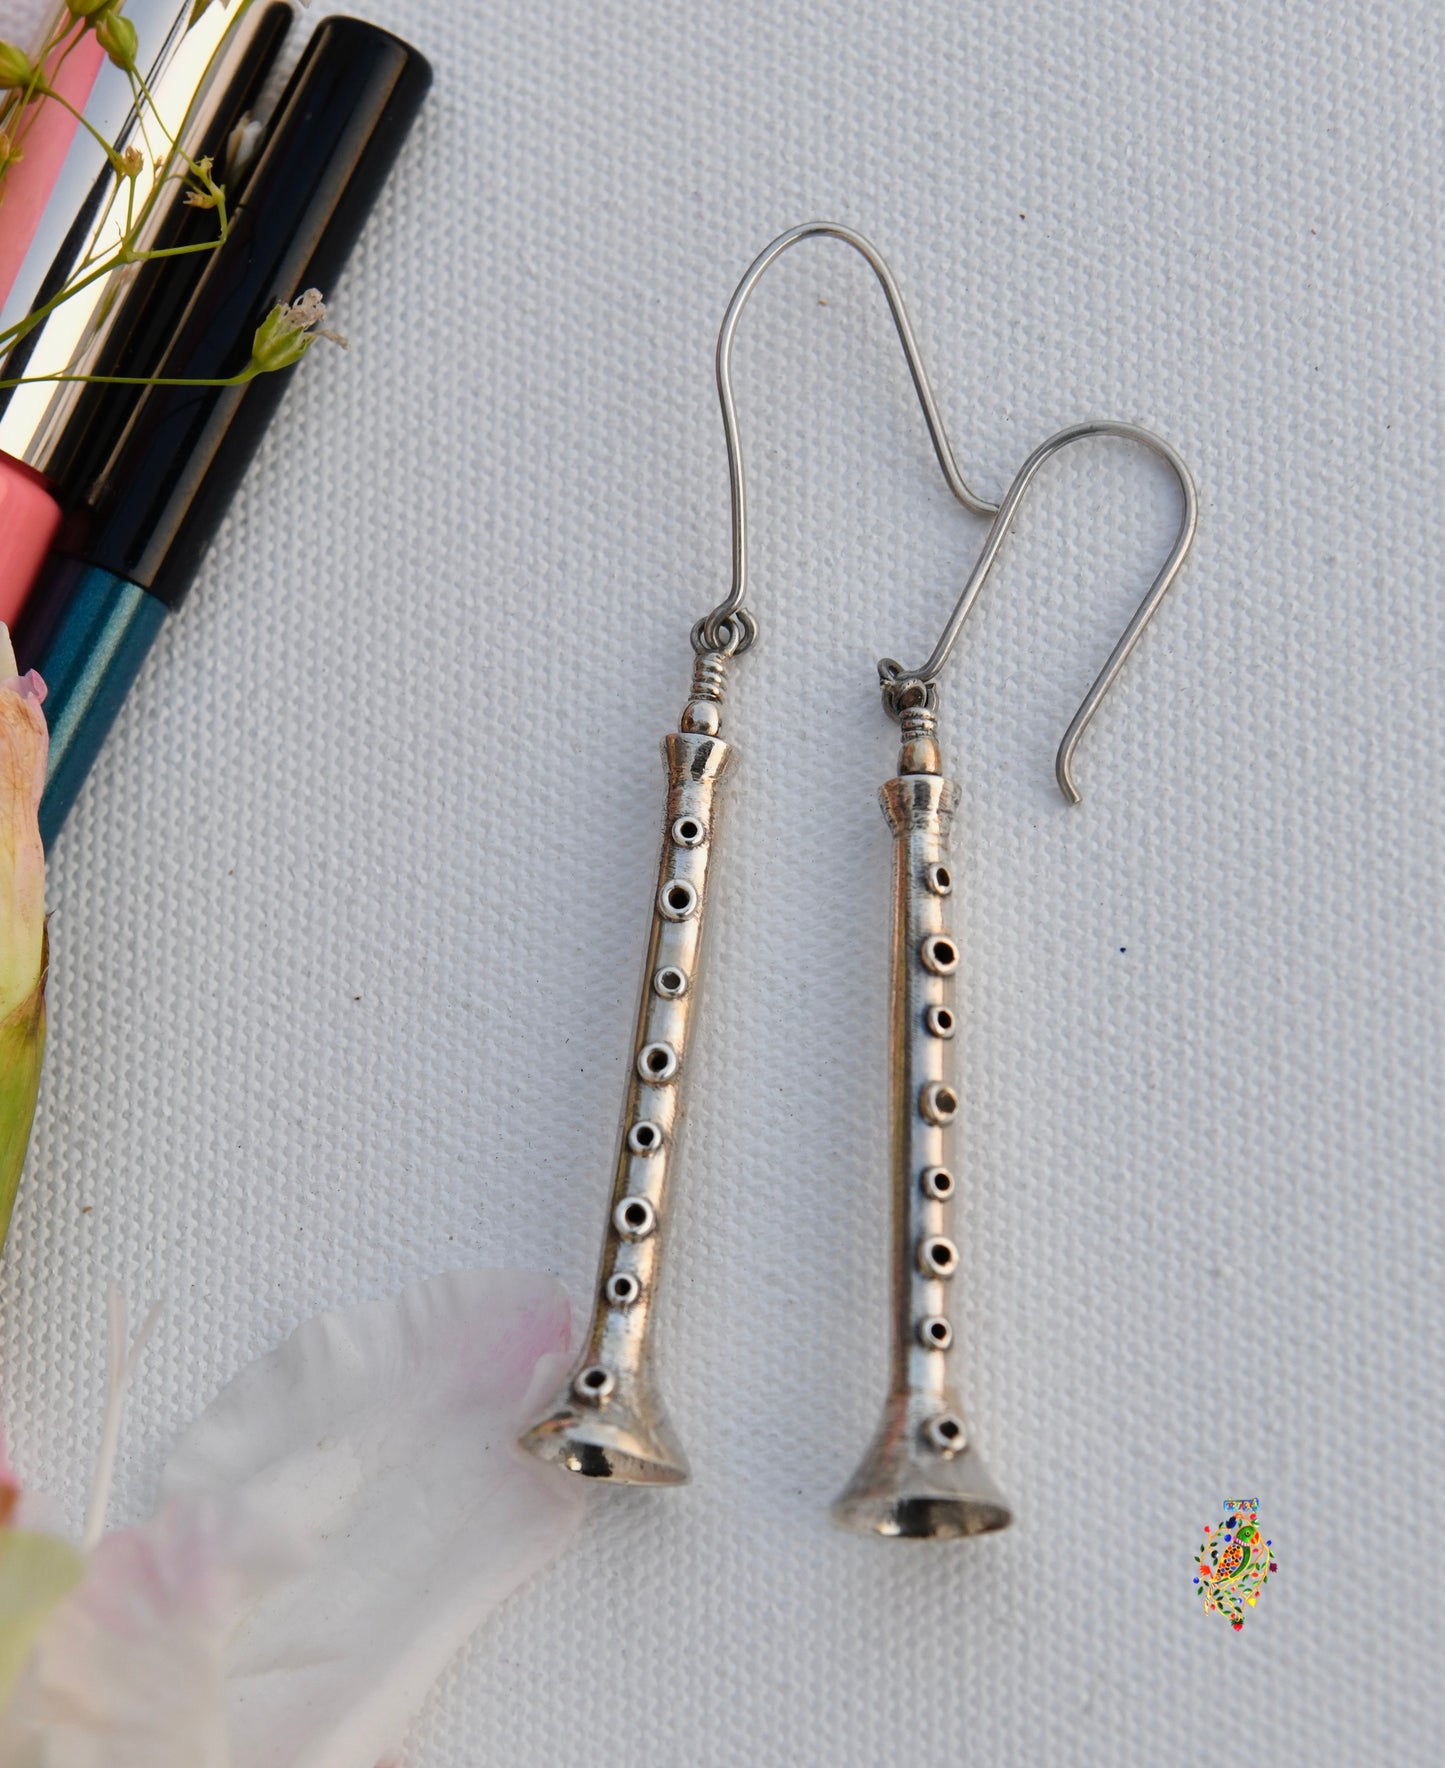 Silver Flute Earrings